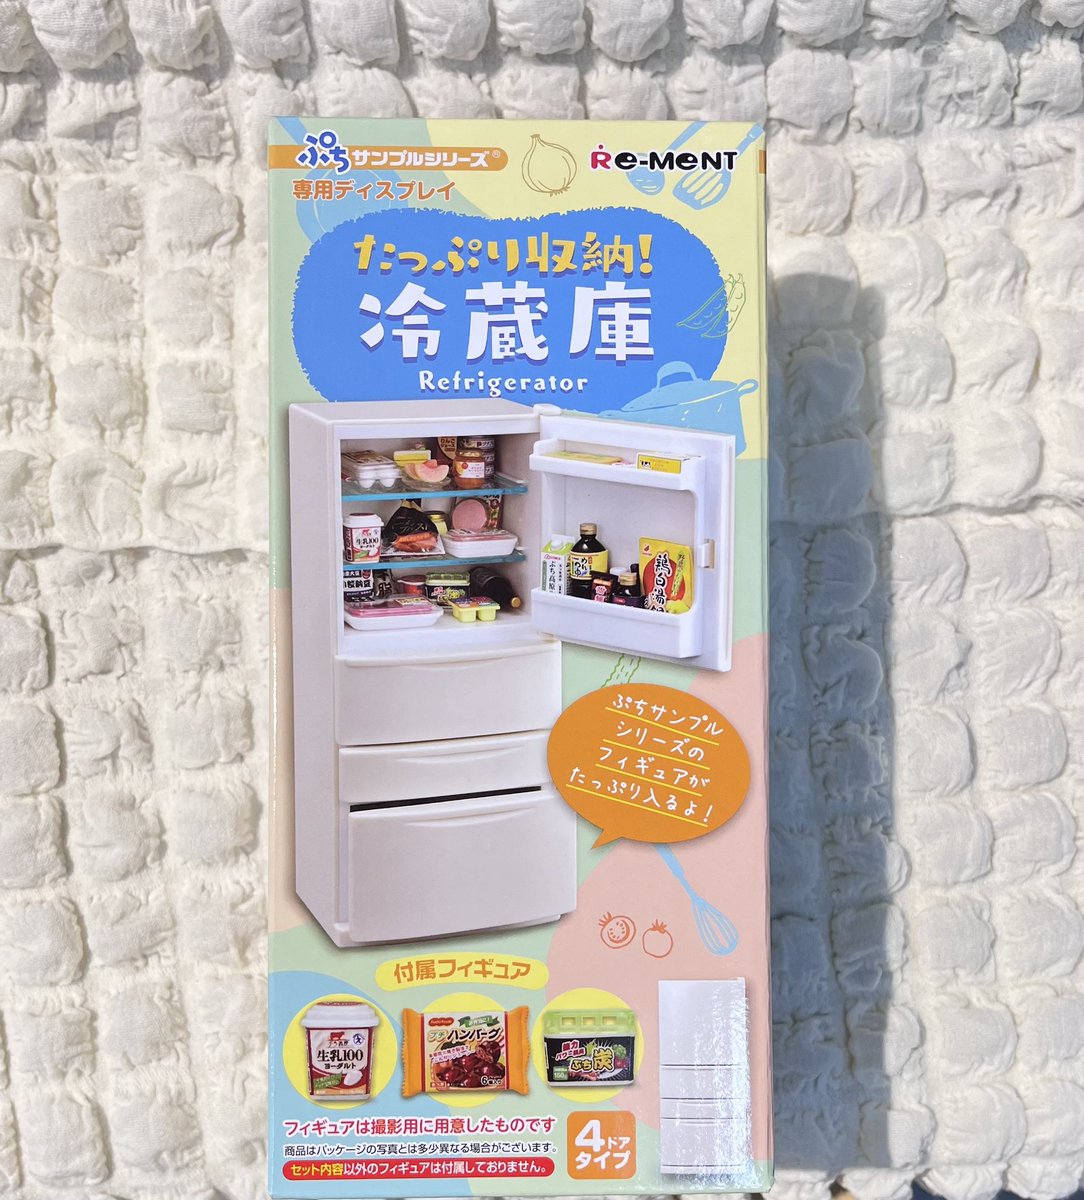 ☁️新入荷情報☁️

#ぷちサンプルシリーズ
❄️たっぷり収納！冷蔵庫